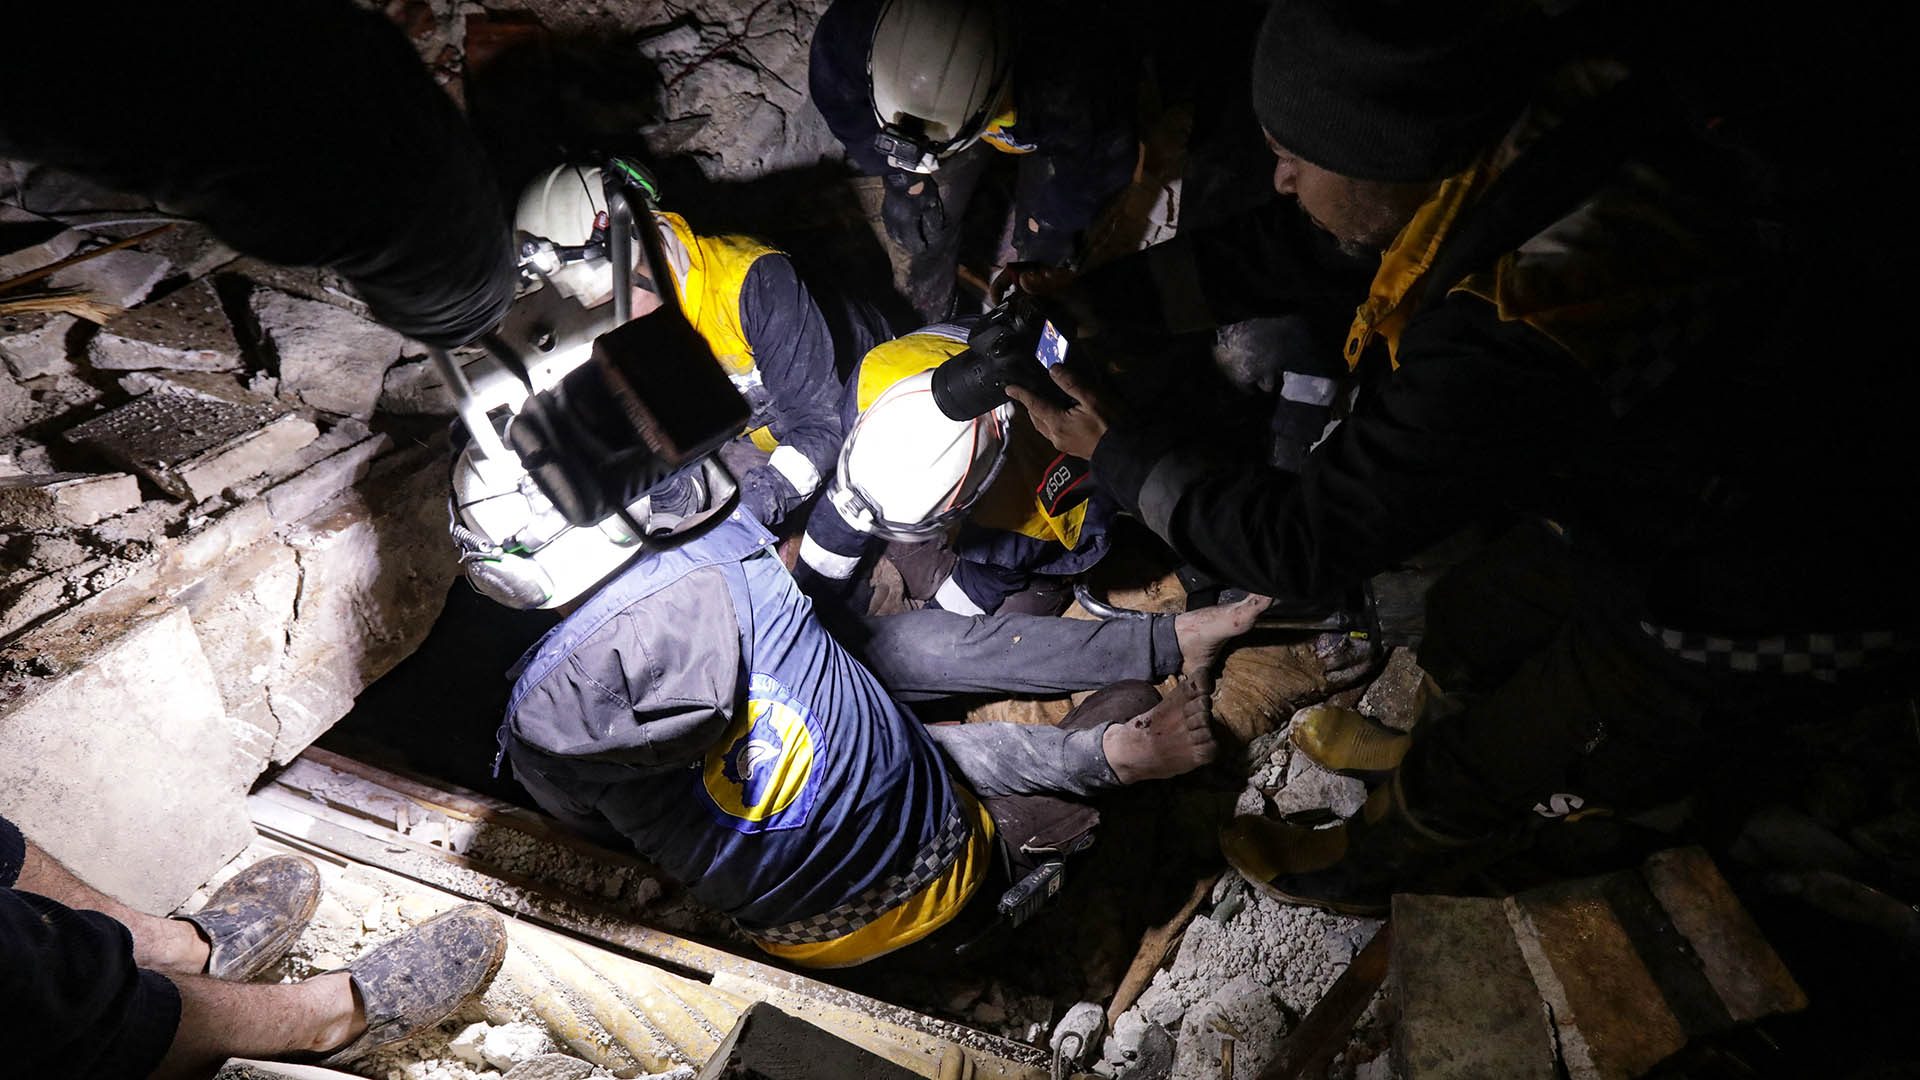 Rescatistas sirios (Cascos Blancos) recuperan a un hombre herido de los escombros de un edificio derrumbado tras un terremoto, en la ciudad fronteriza de Azaz, en el norte de la provincia de Alepo, controlada por los rebeldes.
